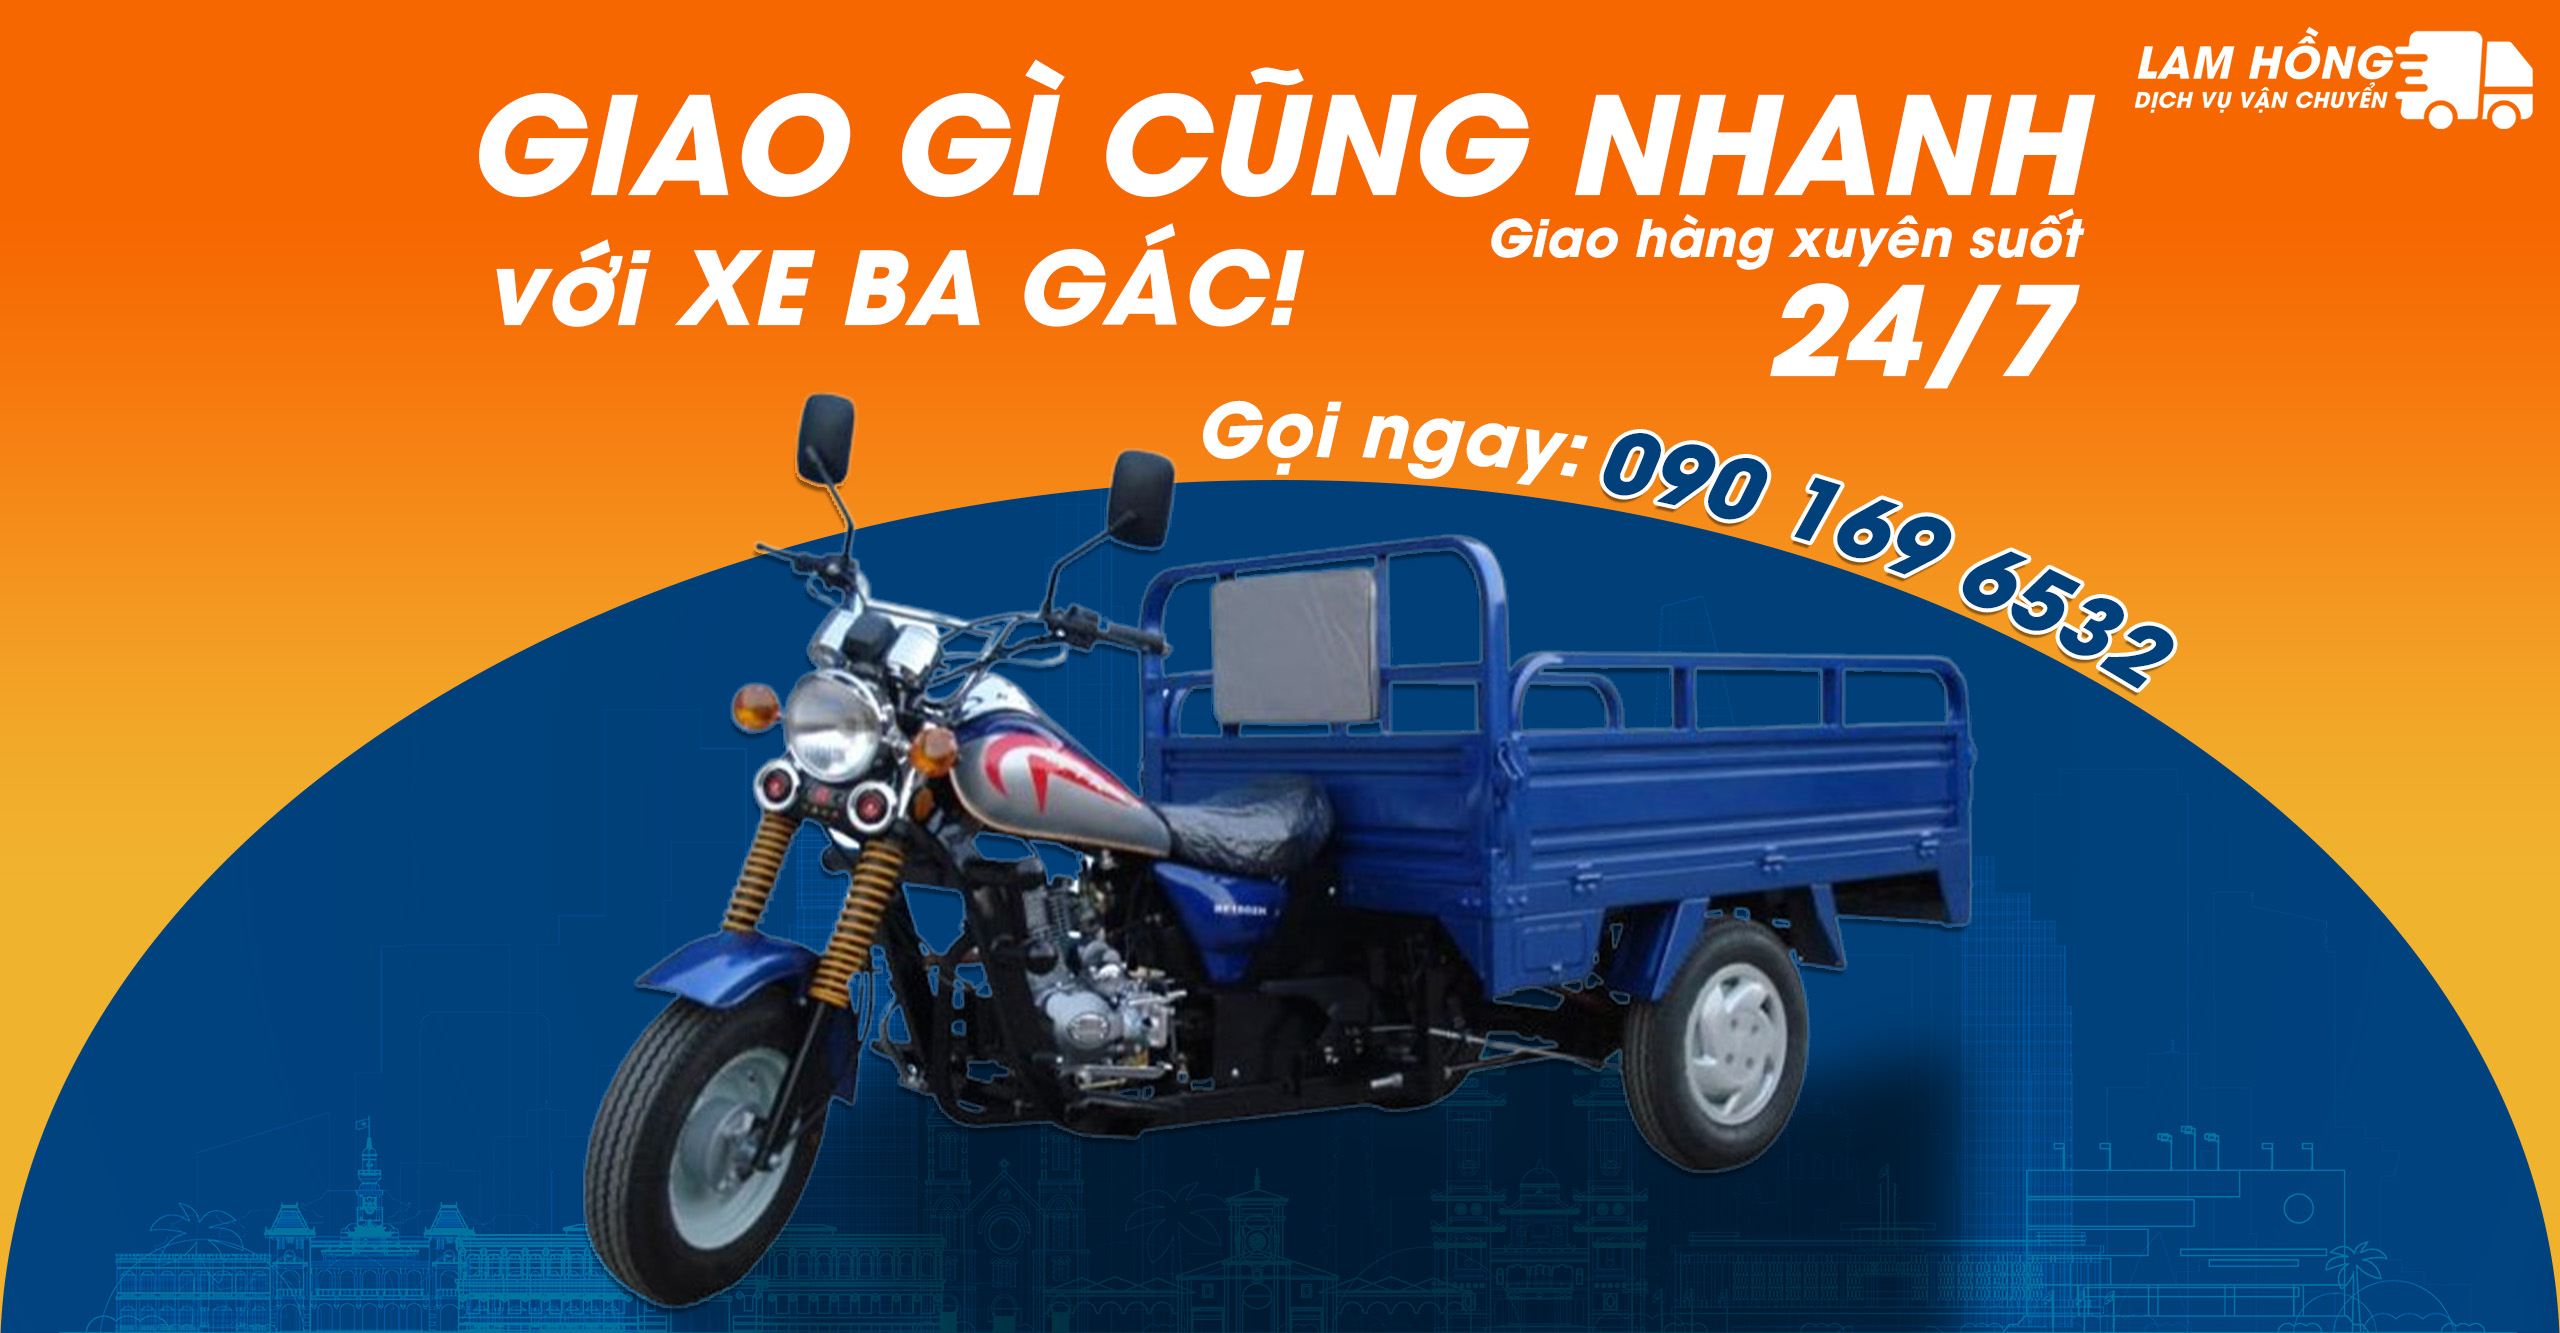 Dịch vụ Xe Ba Gác Chở Hàng Giá Rẻ Tại Quận Tân Bình - Vận Chuyển Lam Hồng